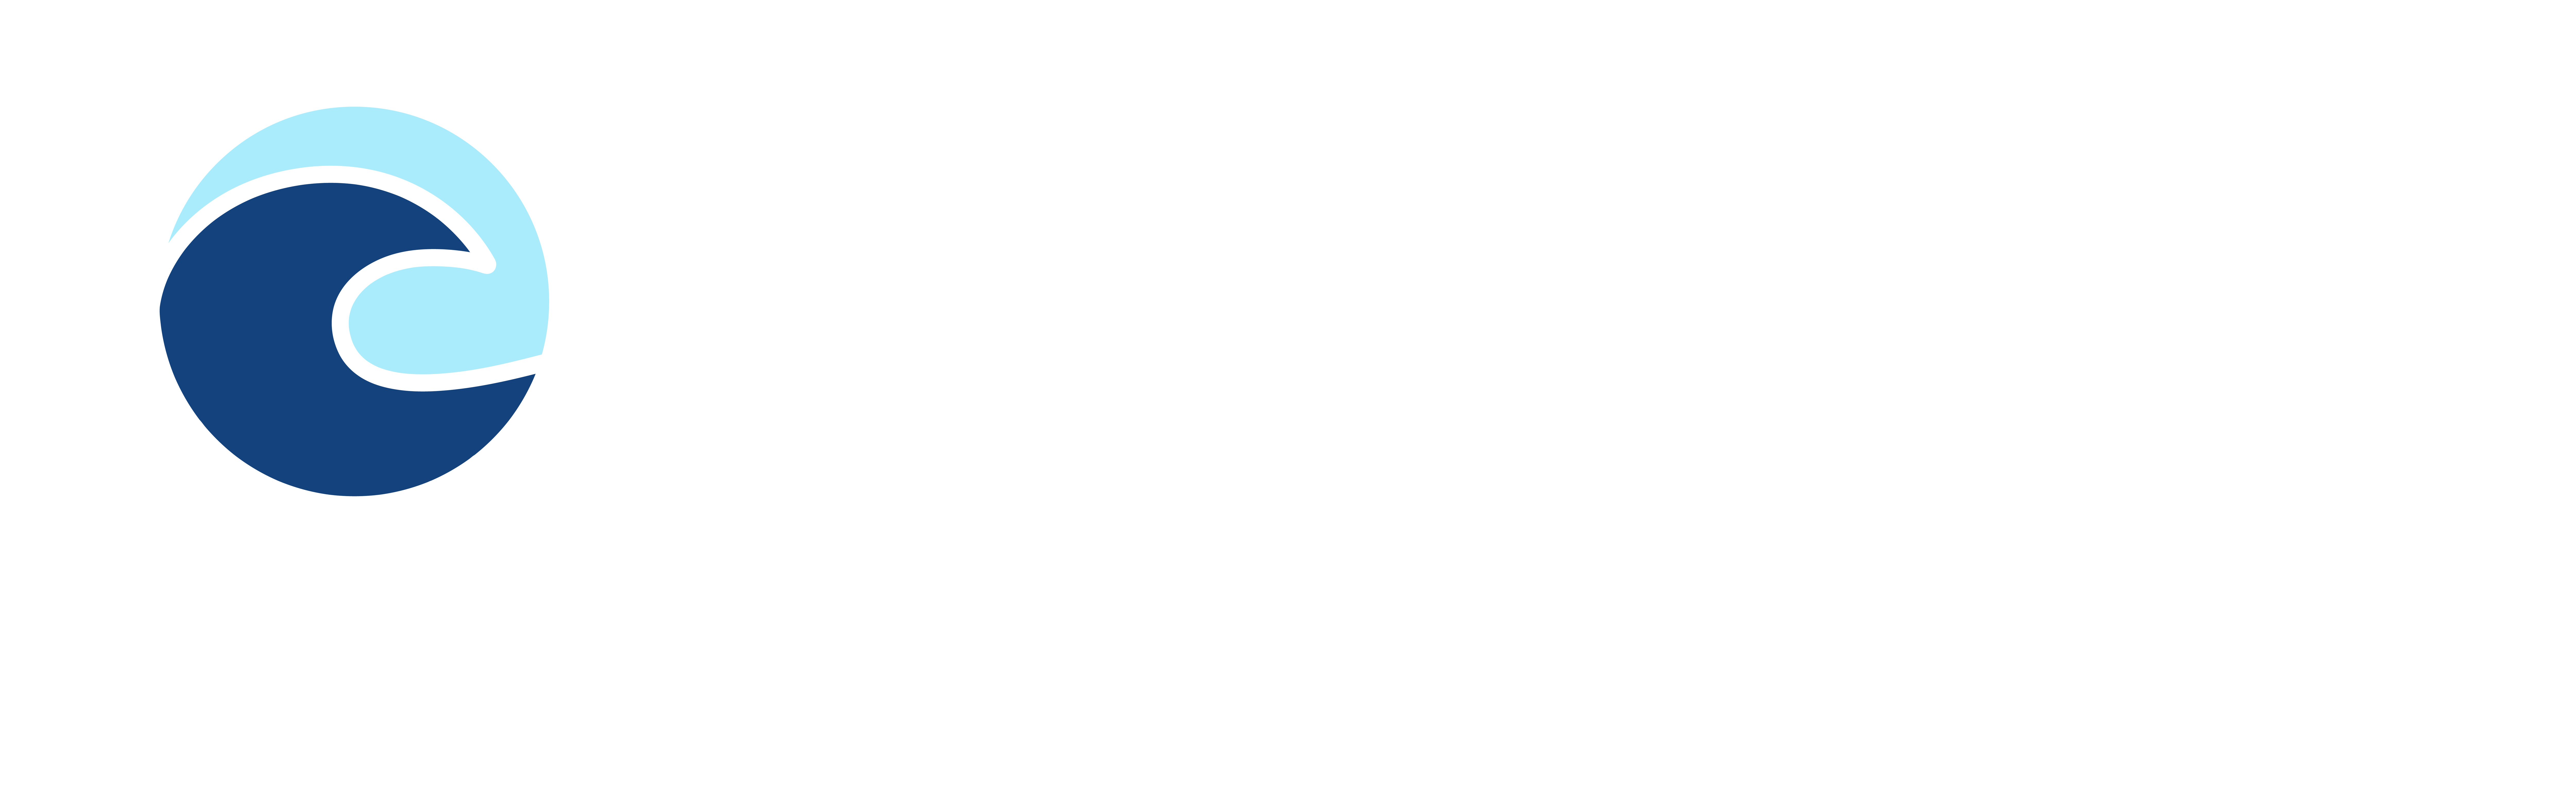 Blue City Logo